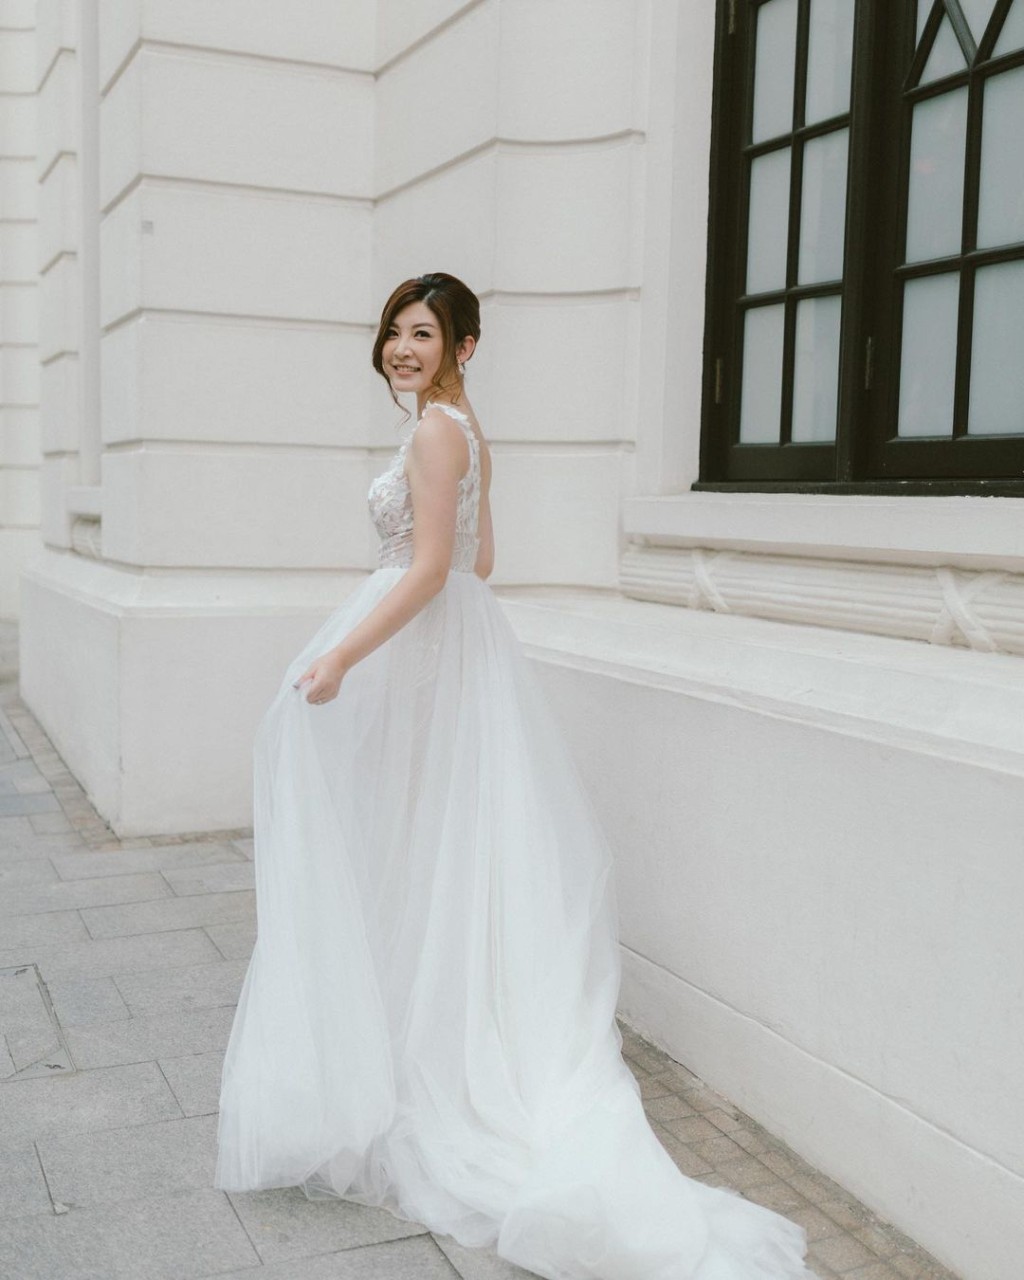 张文采于2018年与消防员卢乐辉结婚。